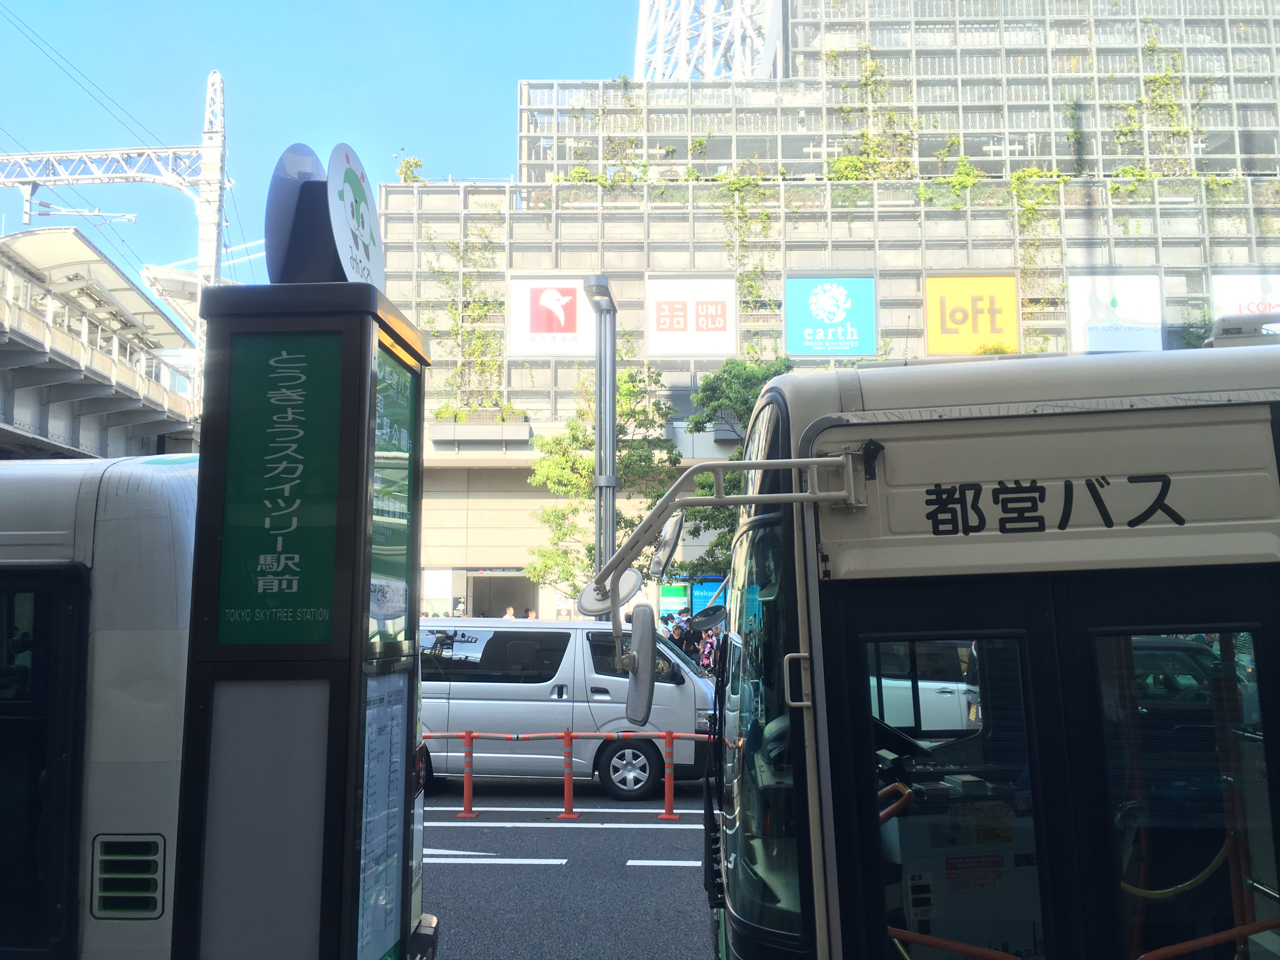 25 スカイ ツリー から 東京 駅 バス